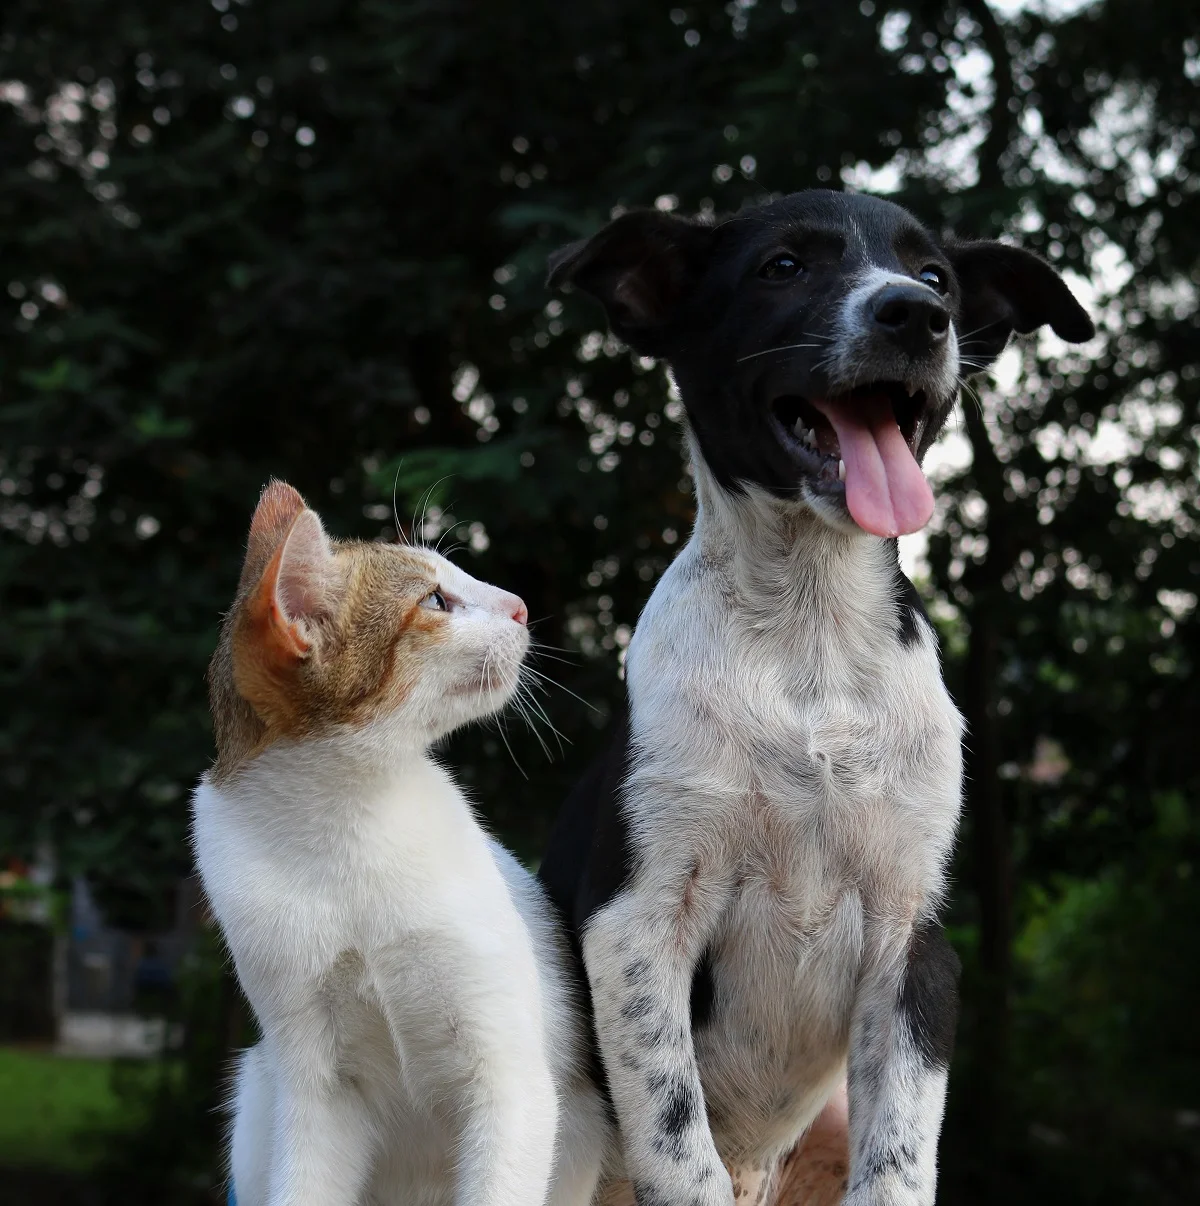 Вчені розповіли, хто має більше шансів дожити до 100 років - власники собак чи котиків - фото 447658